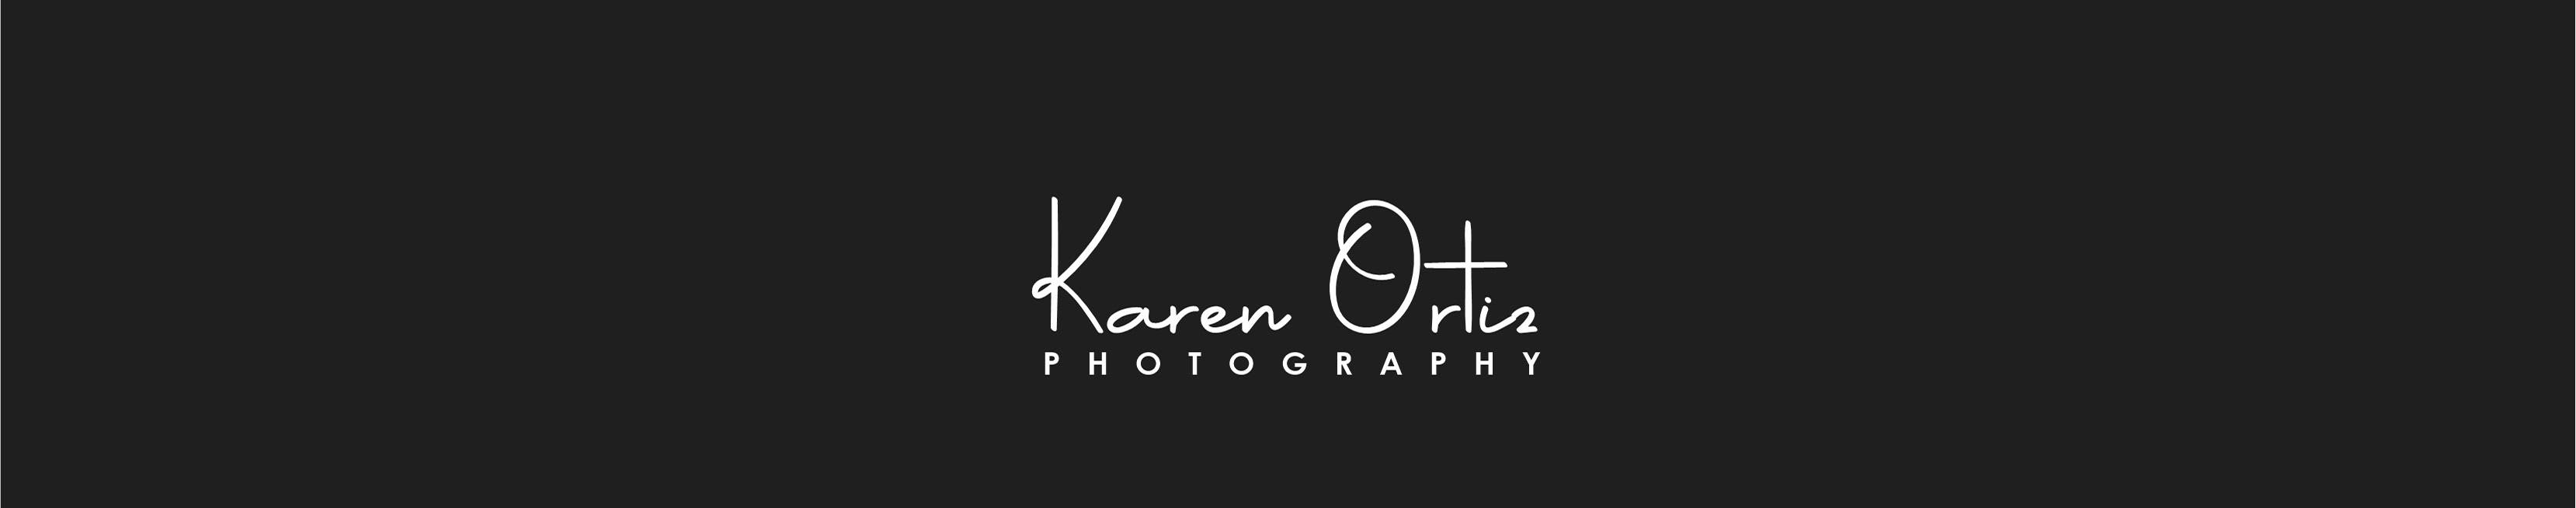 Profil-Banner von Karen Ortiz Photography